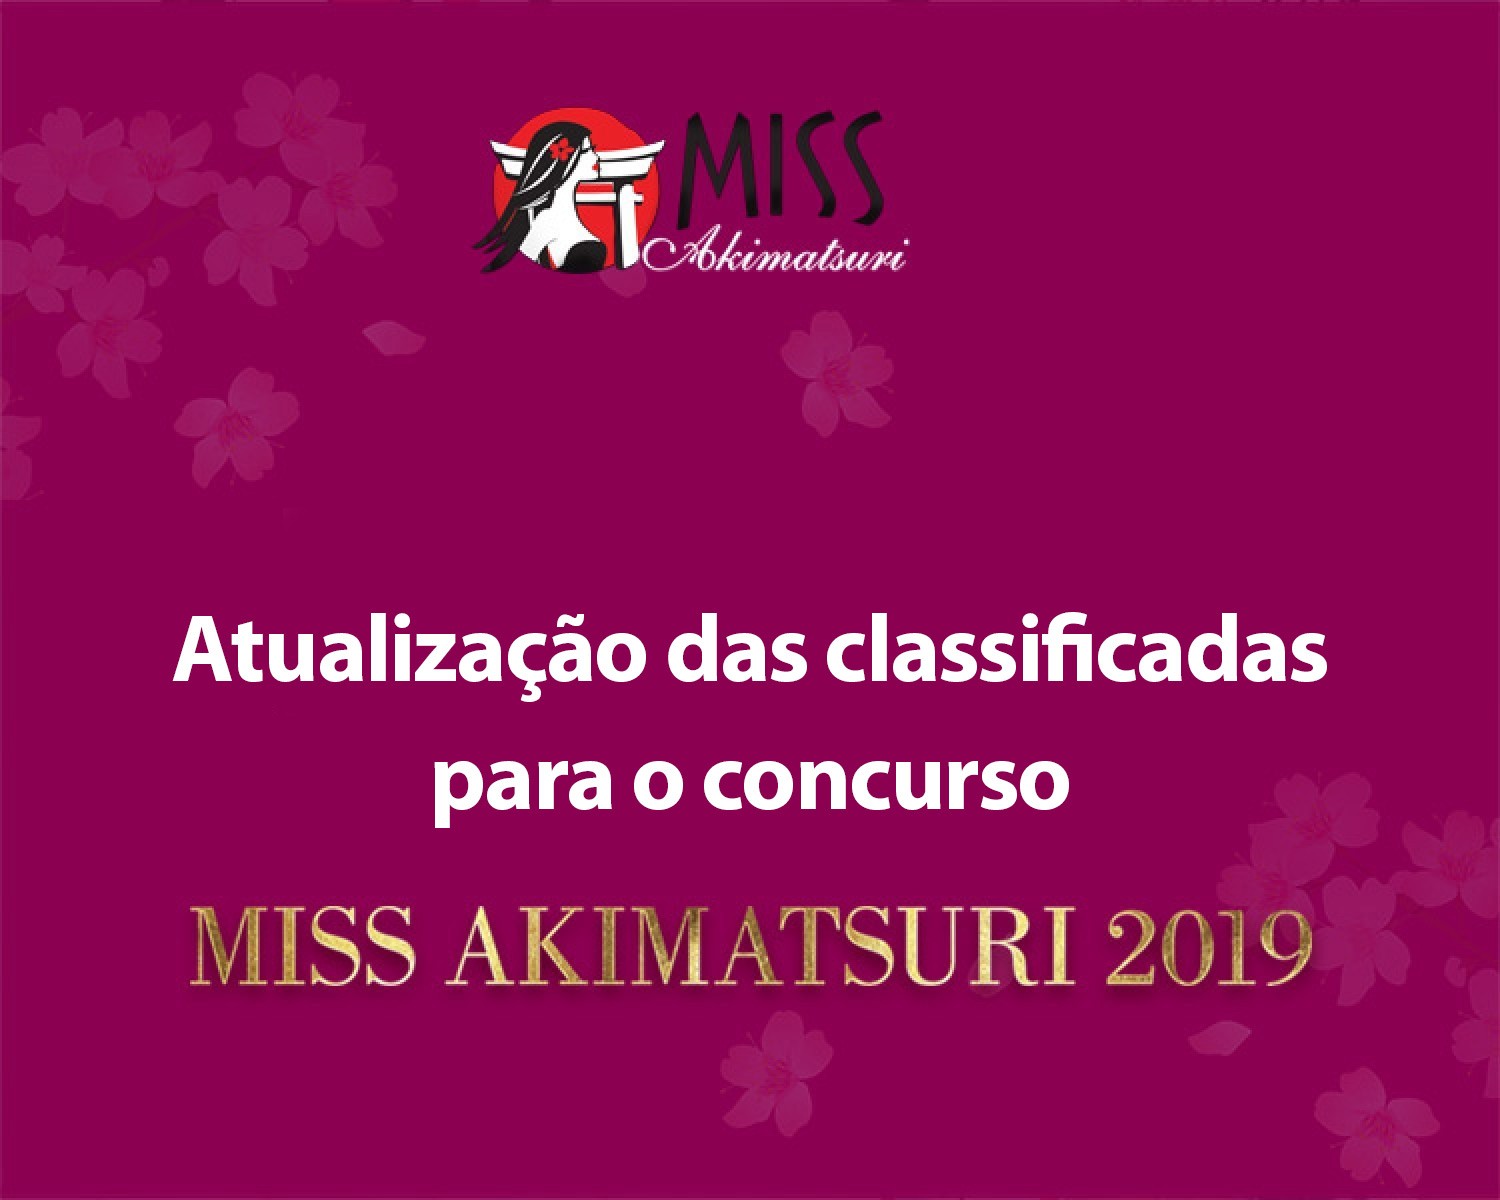 Img: Miss Akimatsuri: Atualização das classificadas para o concurso 2019